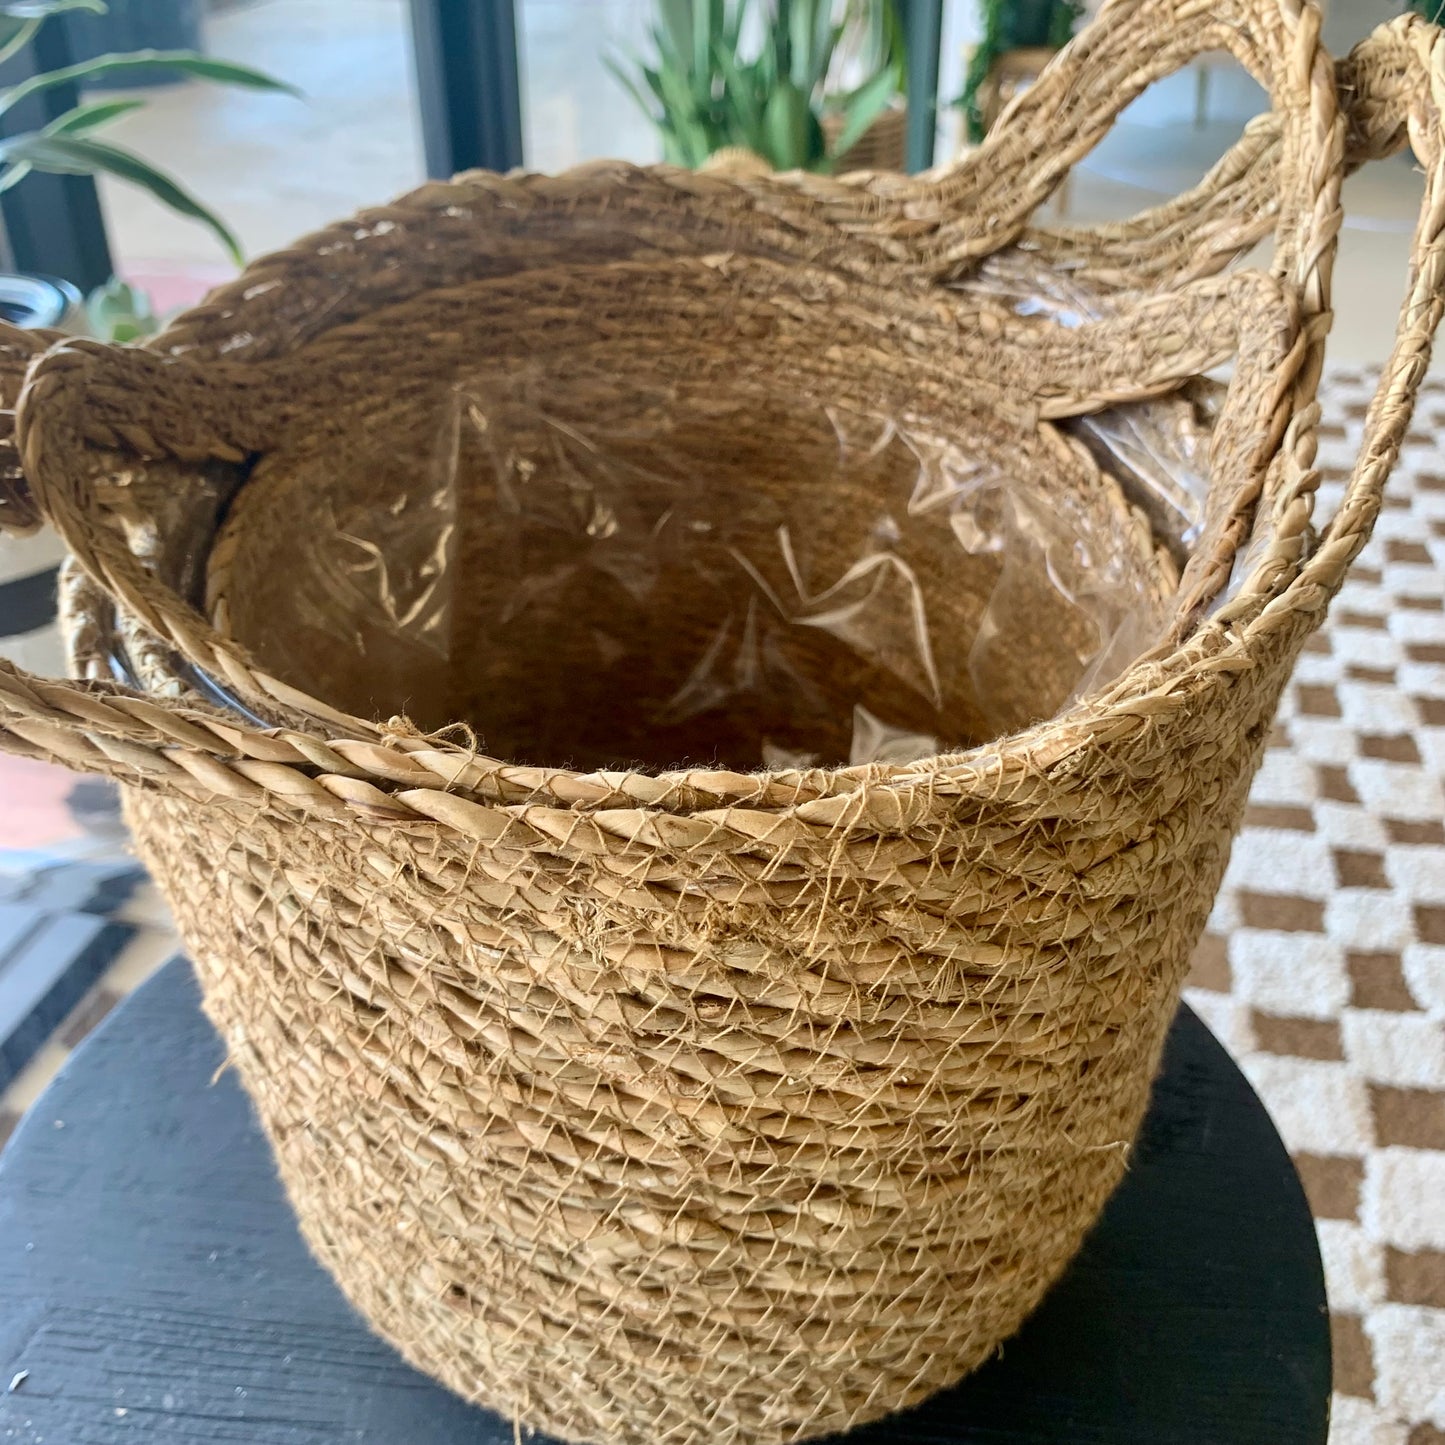 Natural Weave Basket